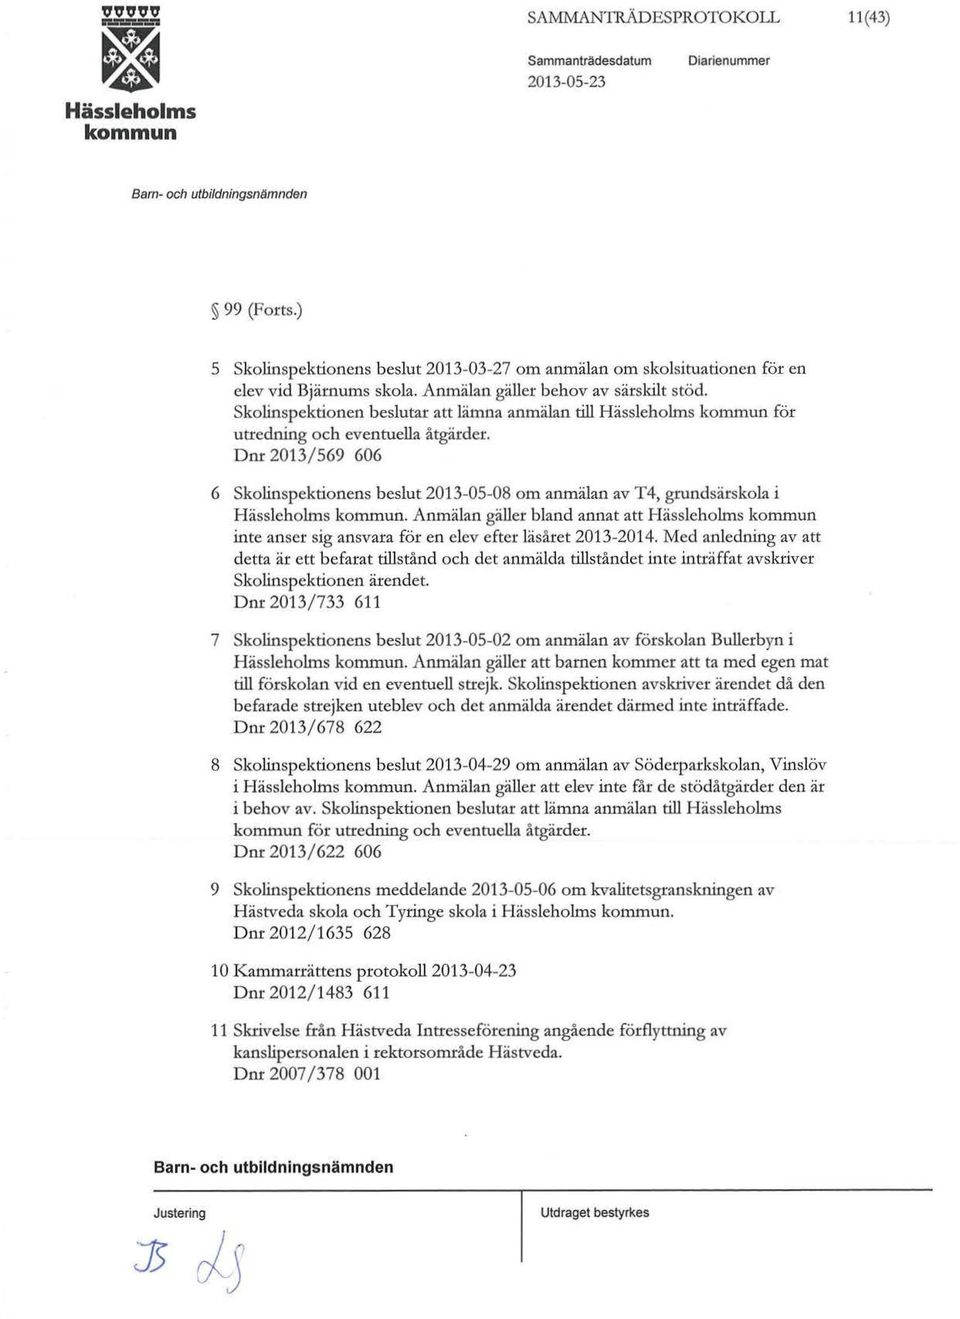 Dnr 2013/569 606 6 skolinspektionens beslut 2013-05-08 om anmälan av T4, gnmdsärskola i. Anmälan gäller bland annat att inte anser sig ansvara för en elev efter läsåret 2013-2014.